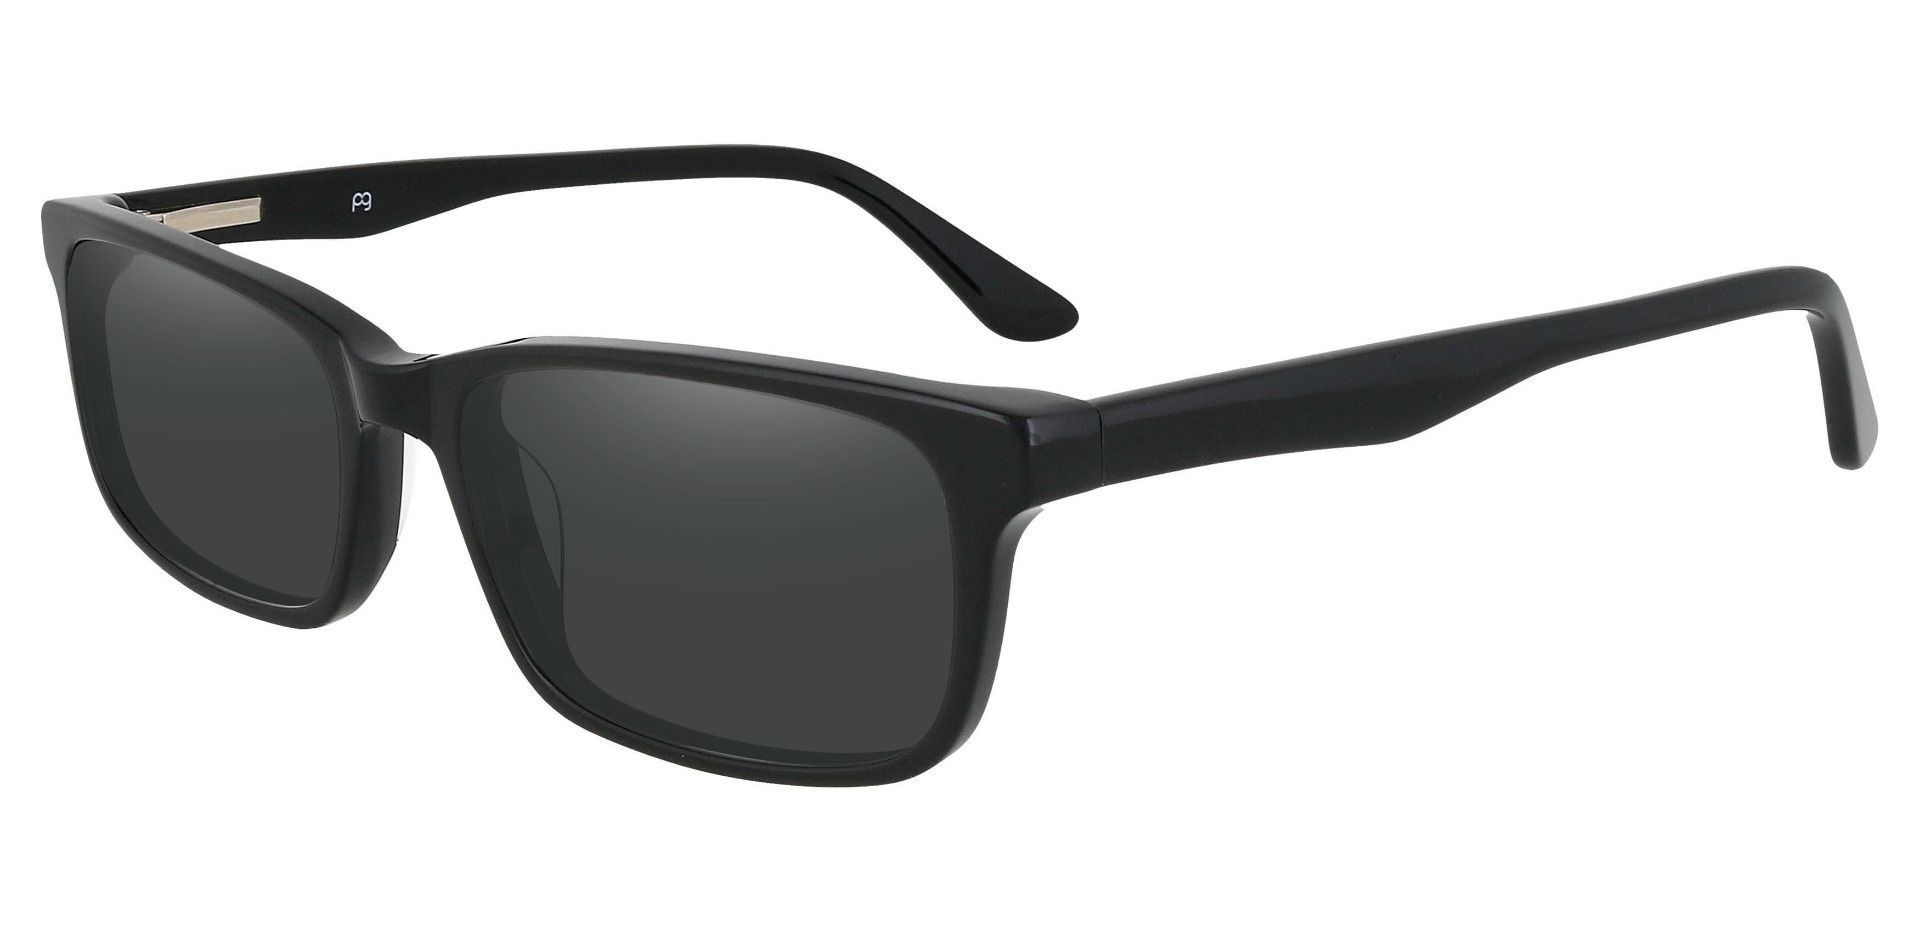 Hendrix Rectangle Progressive Sunglasses - Black Frame With Gray Lenses